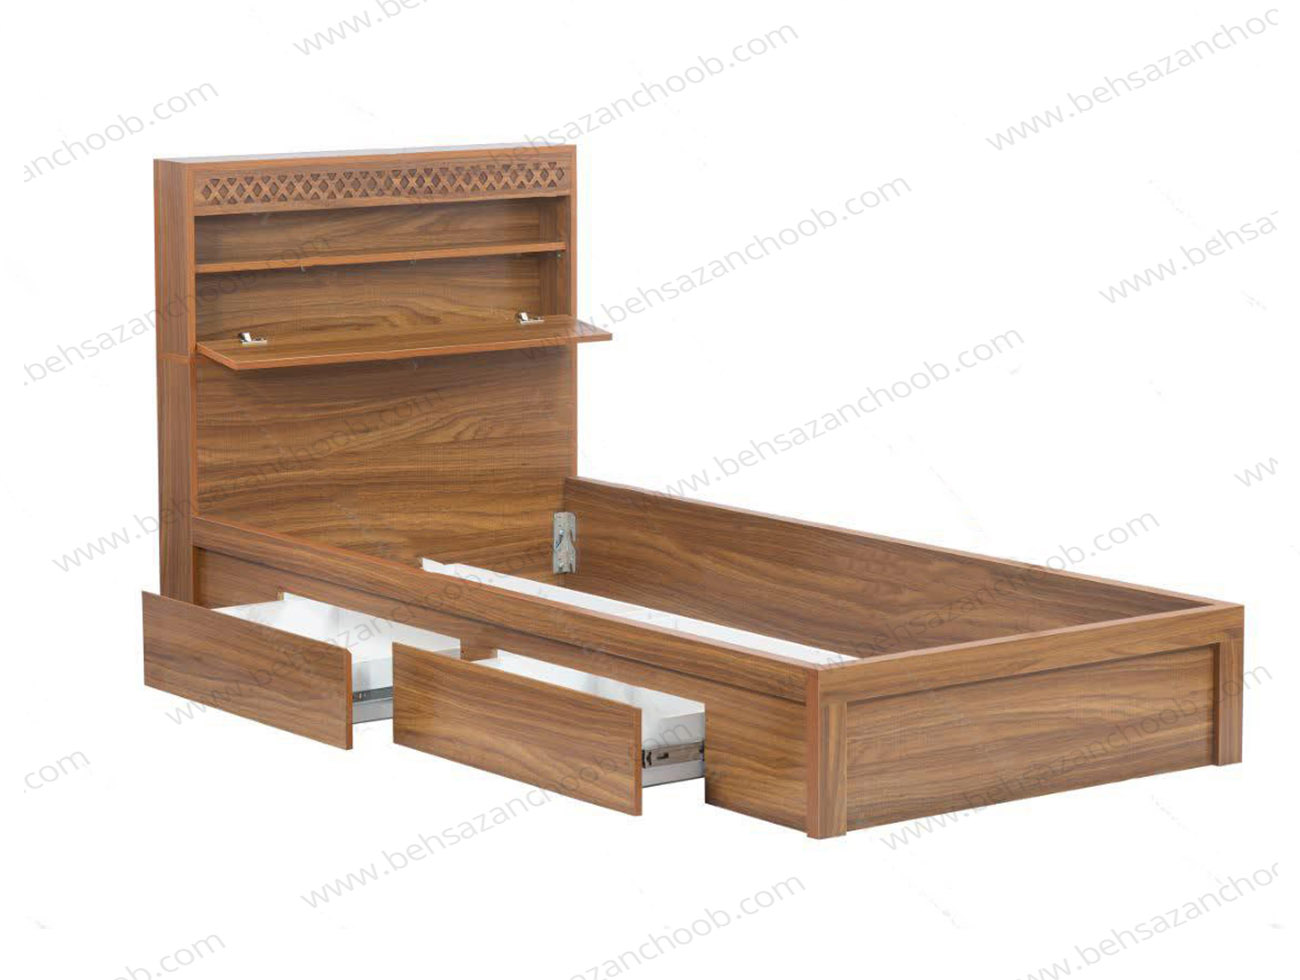 تخت یک نفره با قیمت مناسب؛ فروشگاه بهسازان چوب    